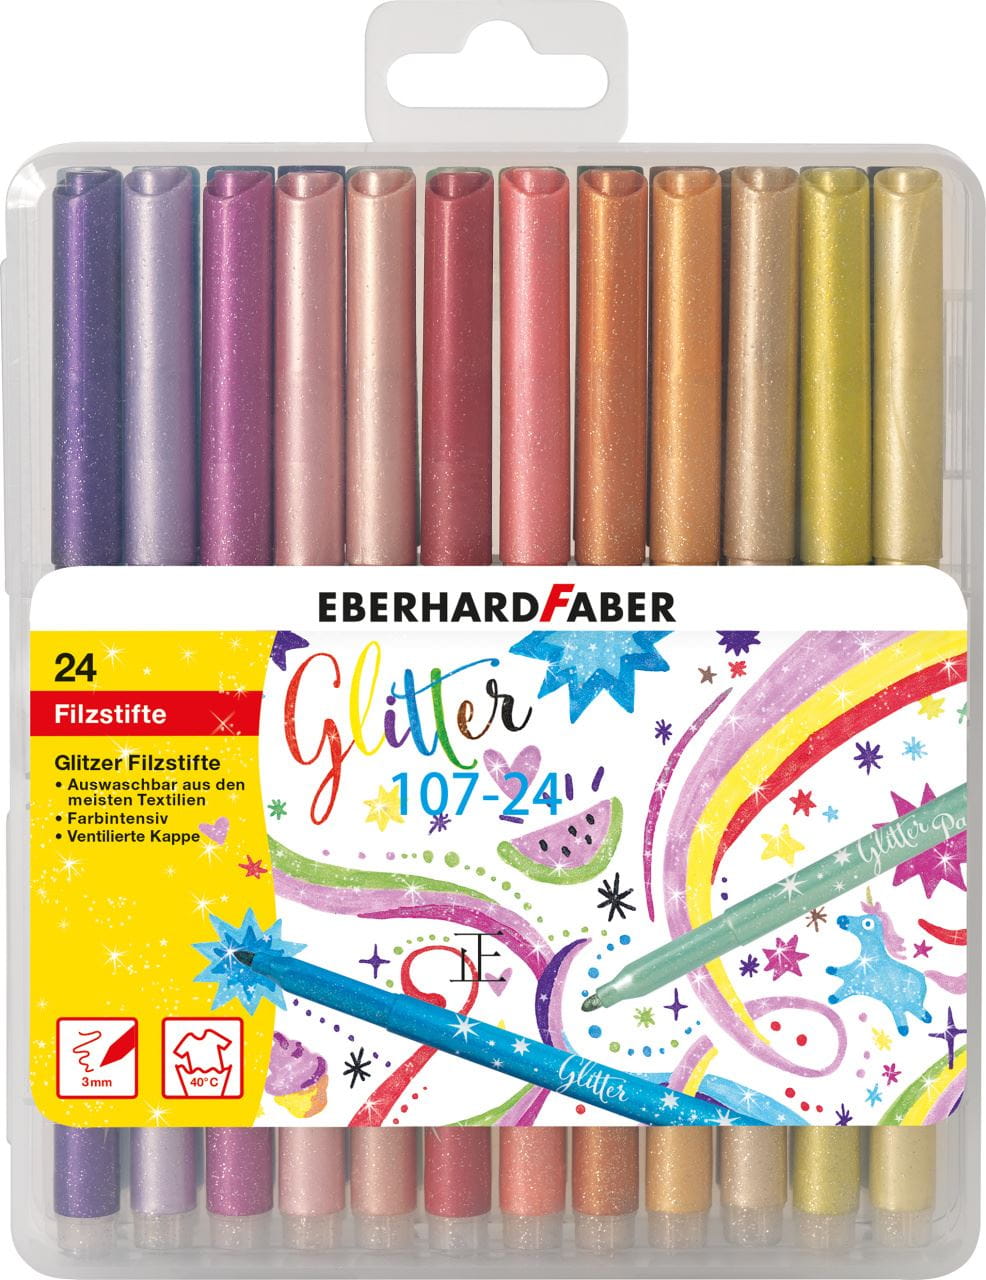 Eberhard-Faber - Glitter felt-tip pen cardboard box of 24